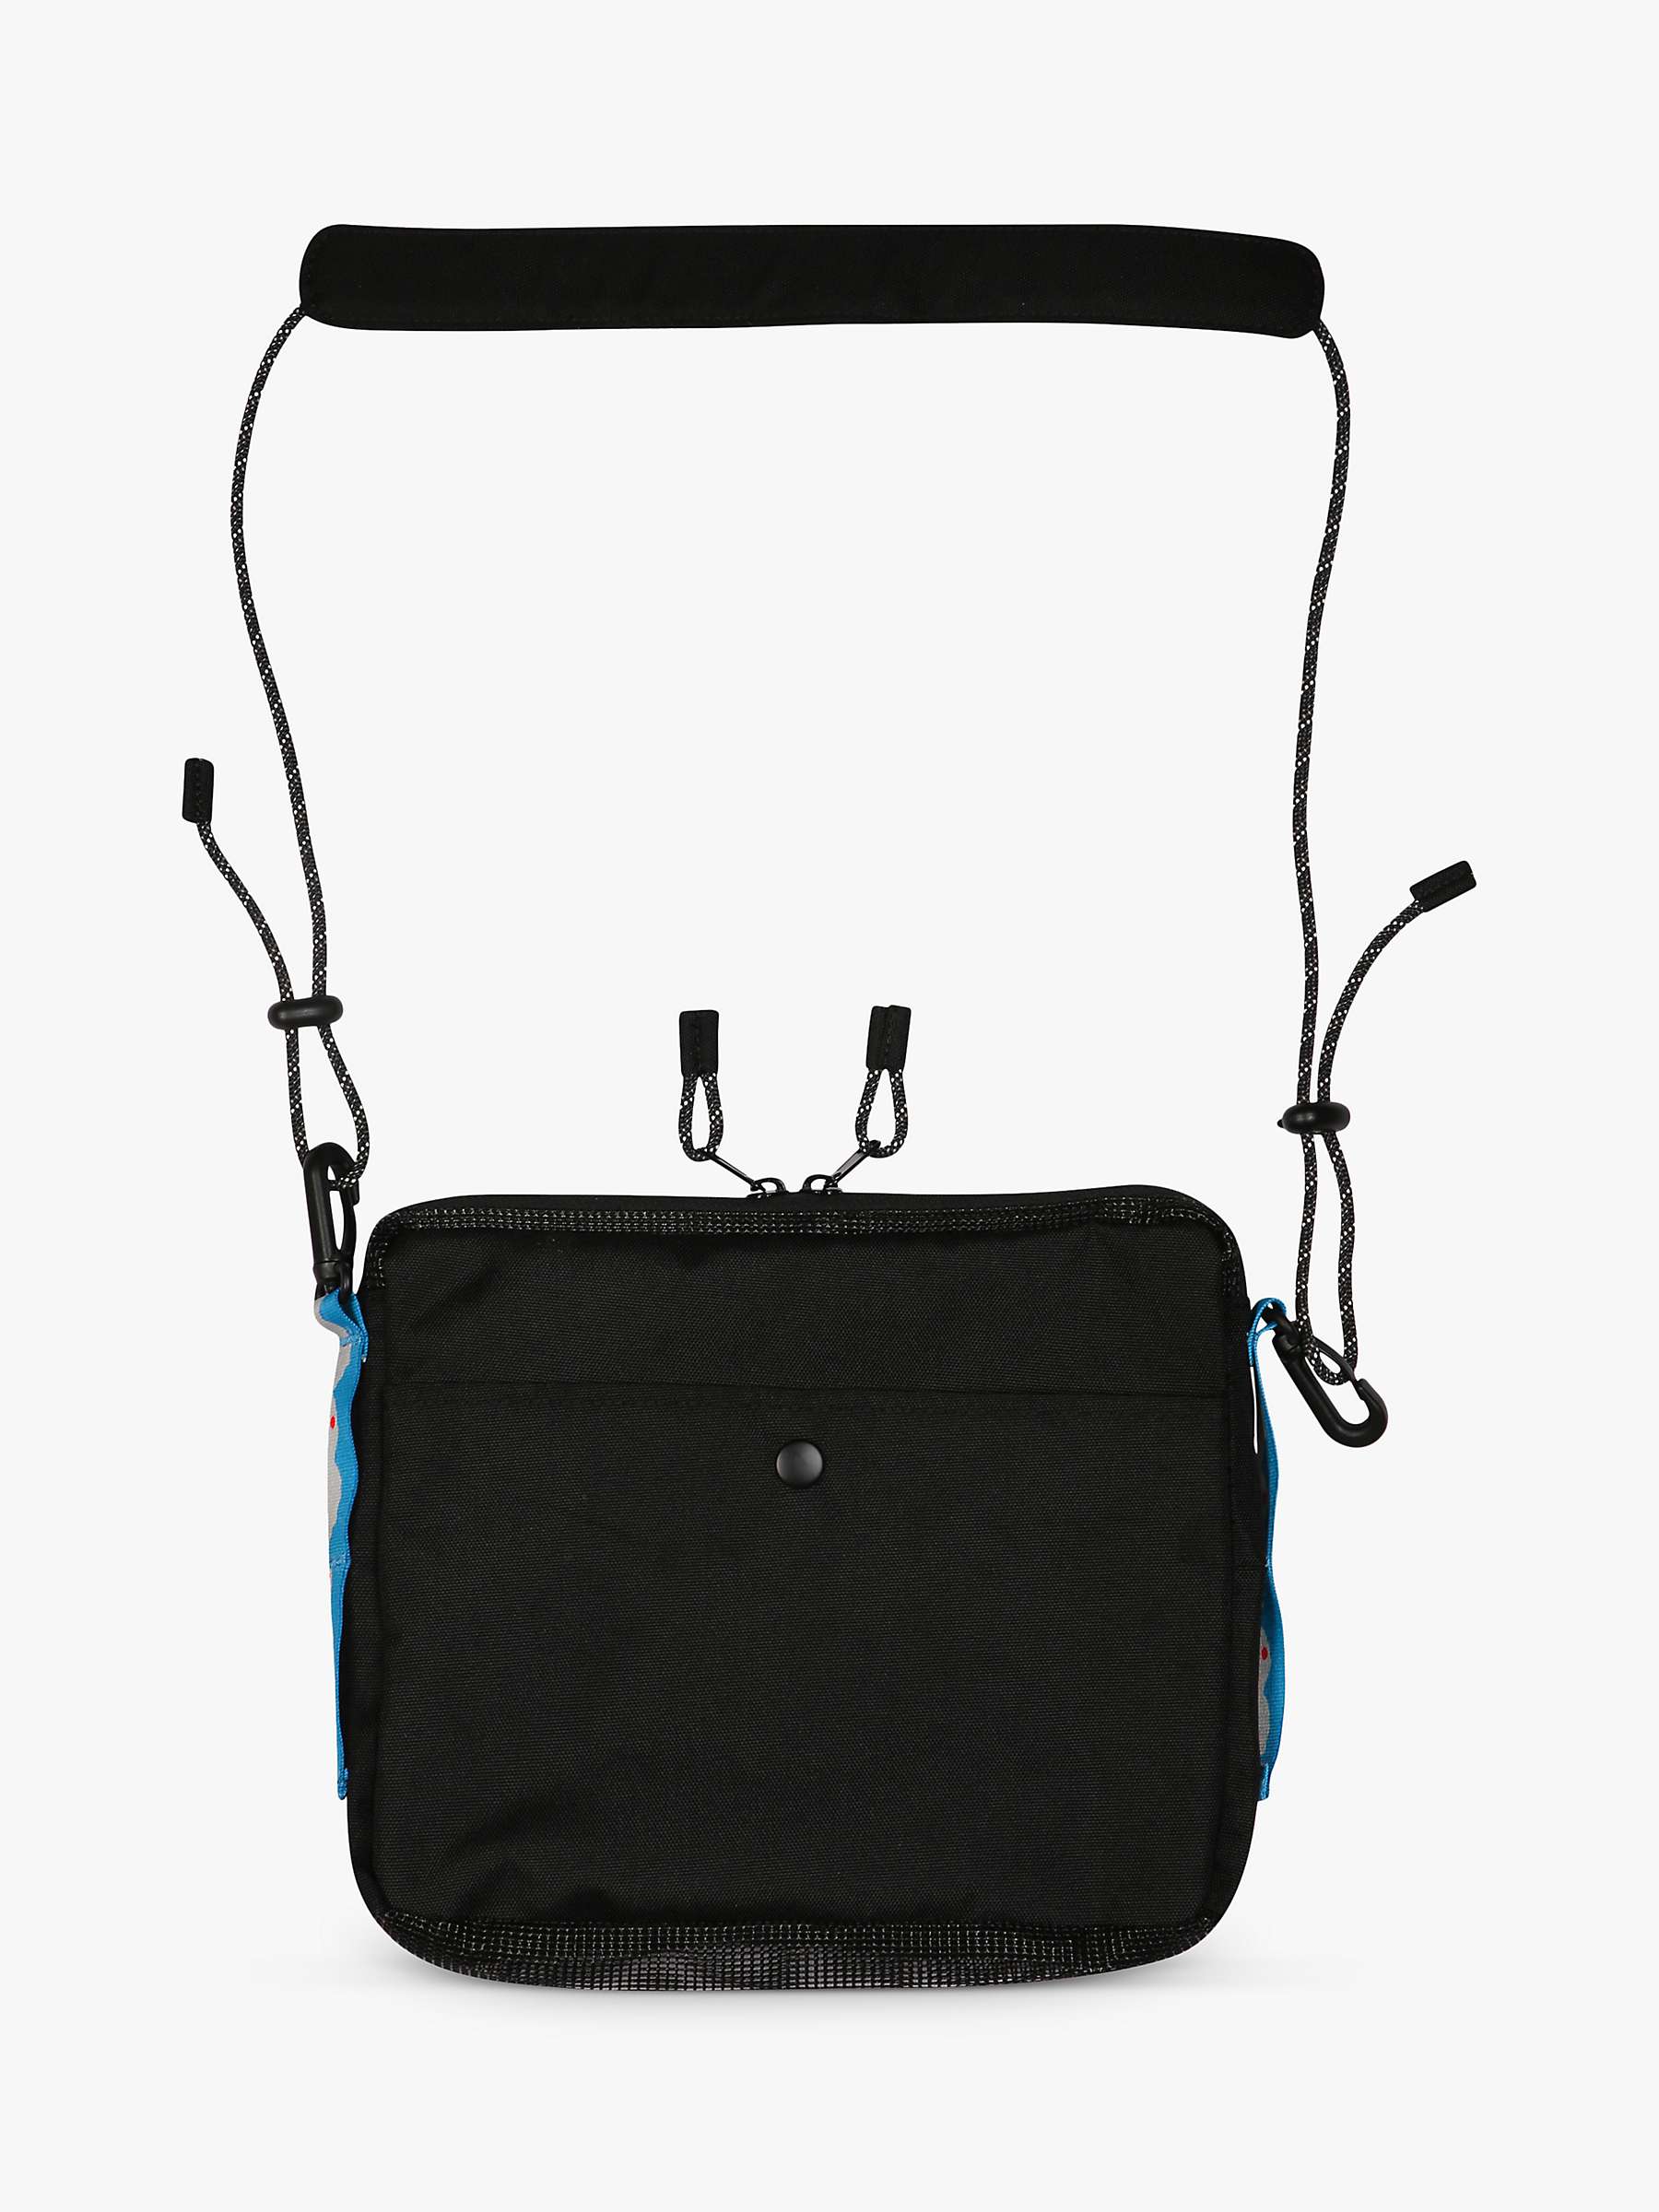 Buy KAVU Seashore Cross Body Bag, Black Online at johnlewis.com